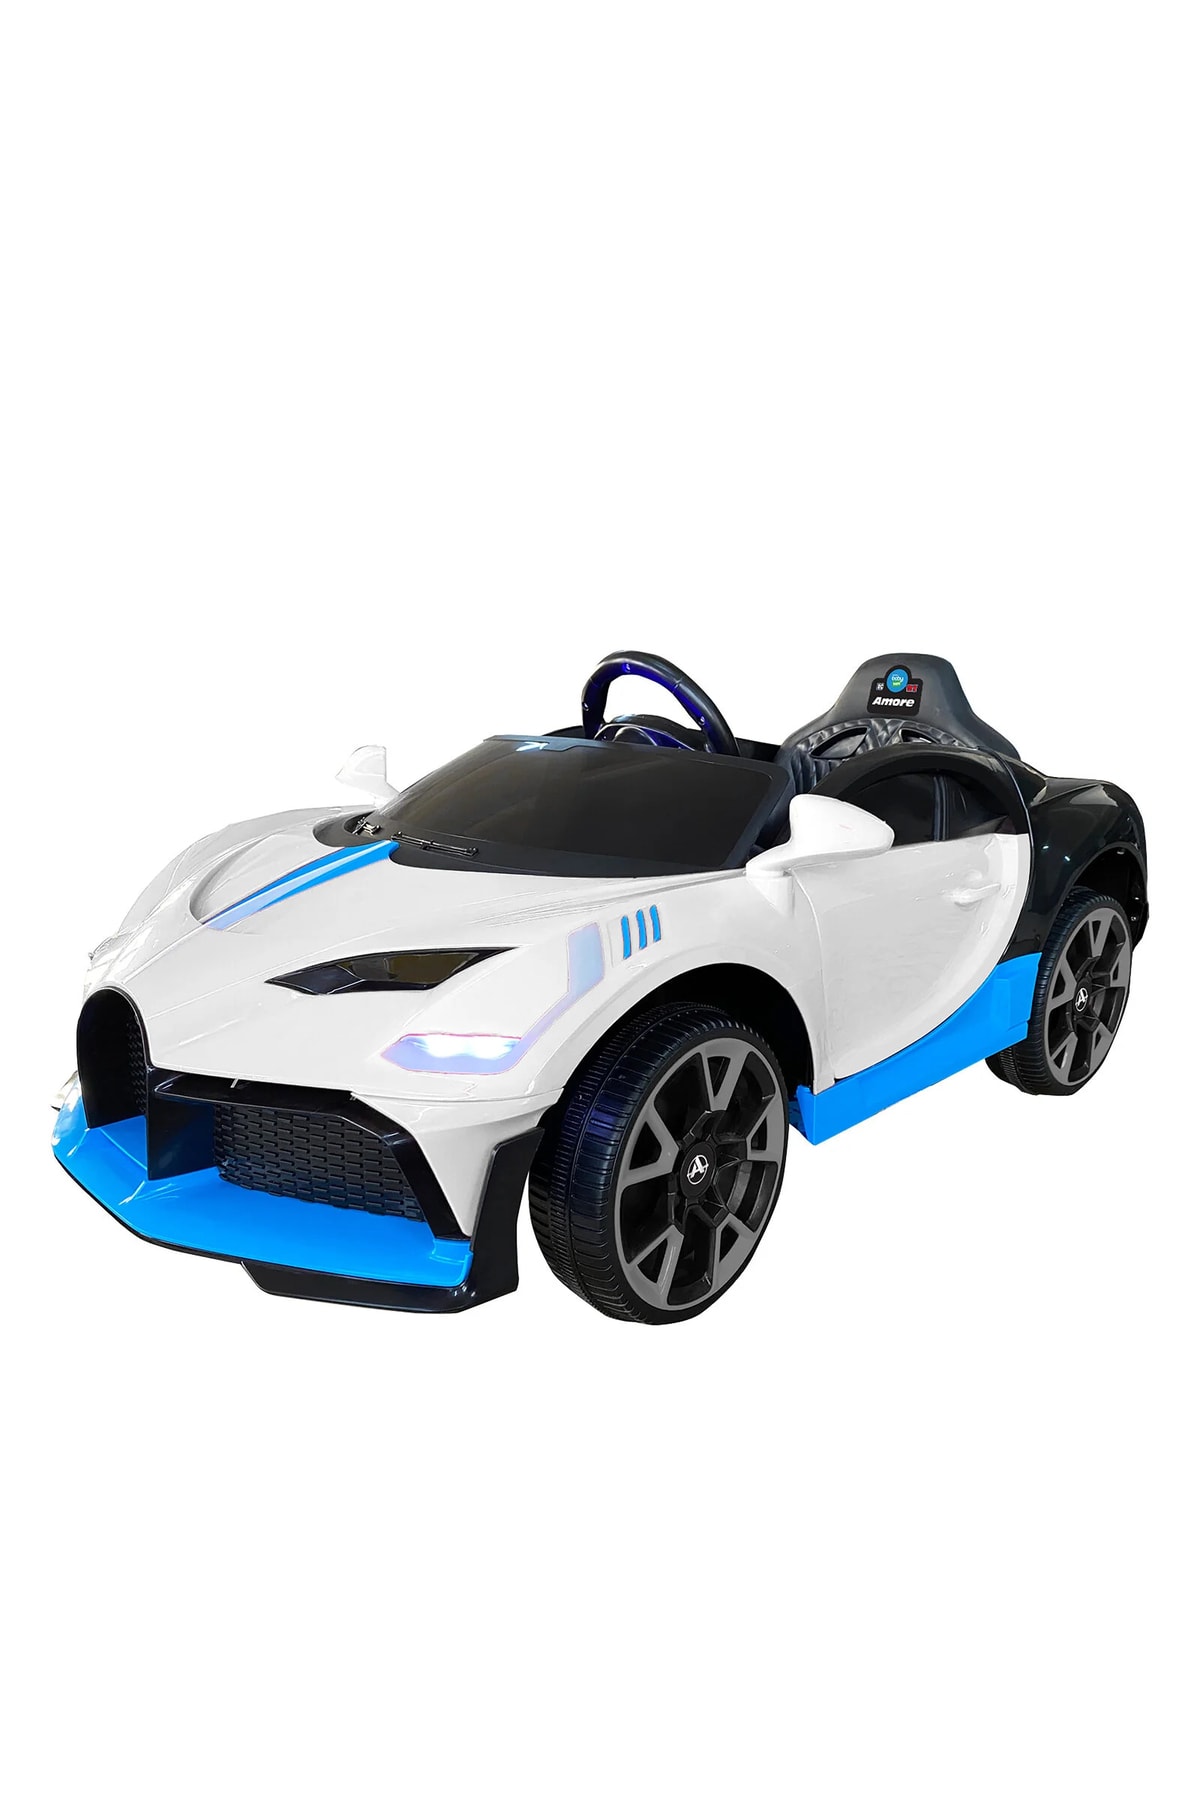 Fable Amore Sport! 12v, Çift Motor, Kumandalı, Bluetoothlu, Beşik Modlu Akülü Araba!